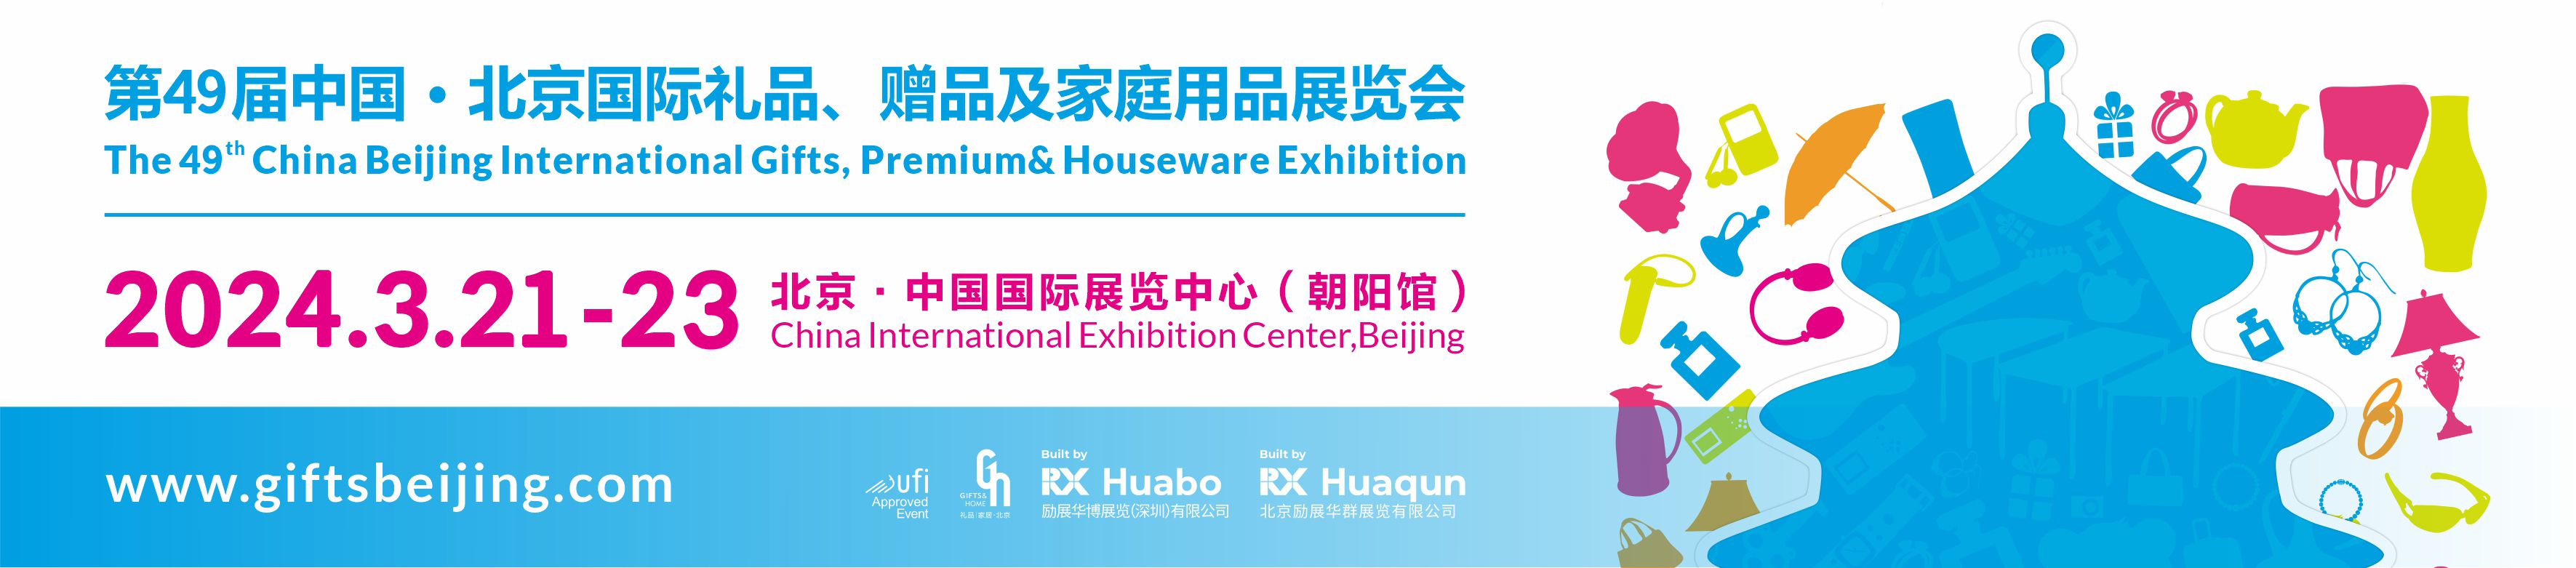 第49届中国北京国际礼品、赠品及家庭用品展览会-大号会展 www.dahaoexpo.com